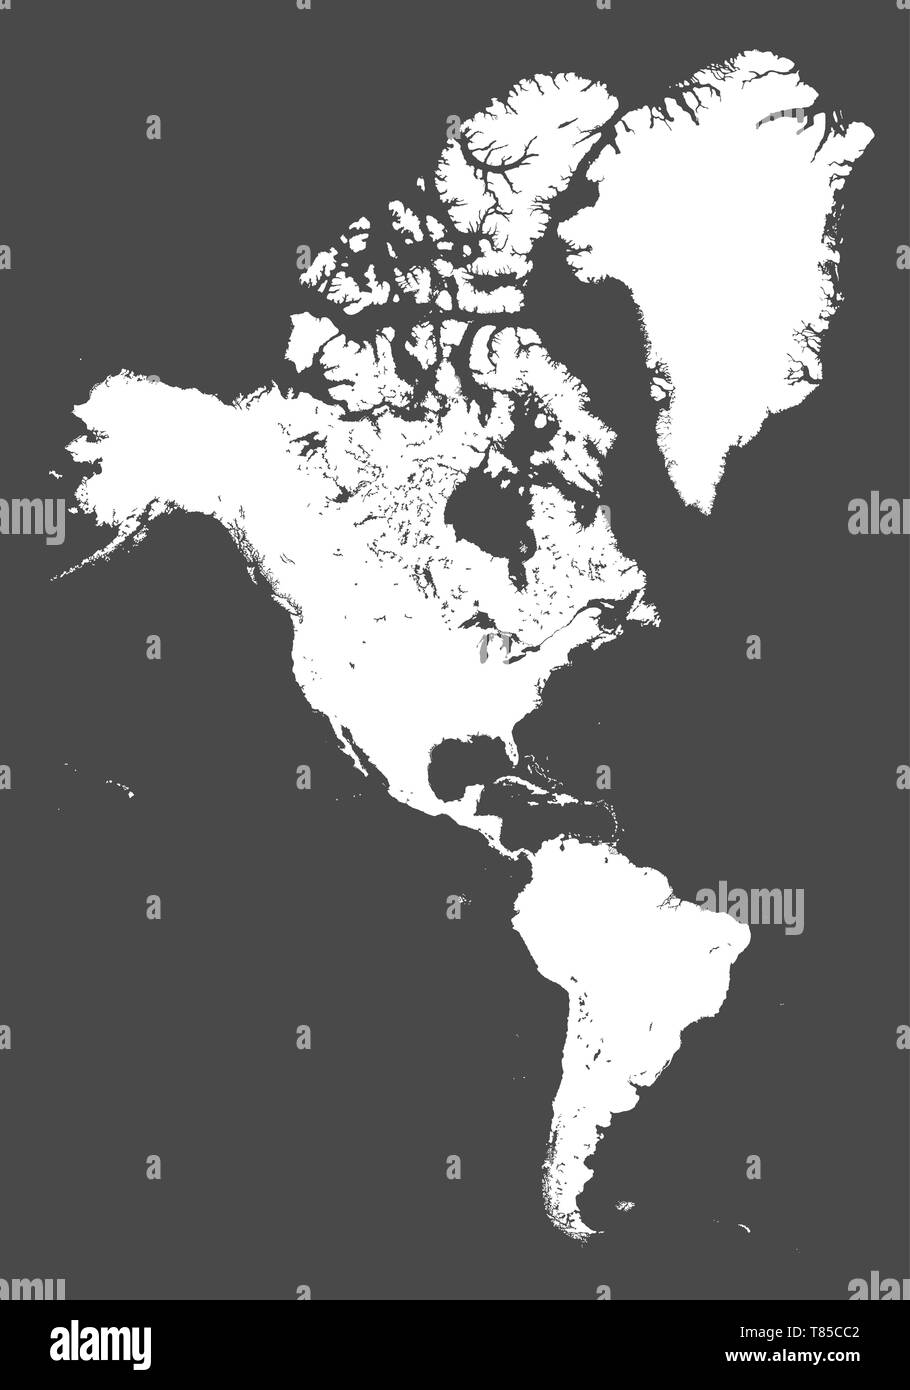 Vektor hoch detaillierte politische Karte von Nordamerika kontinent Stock Vektor